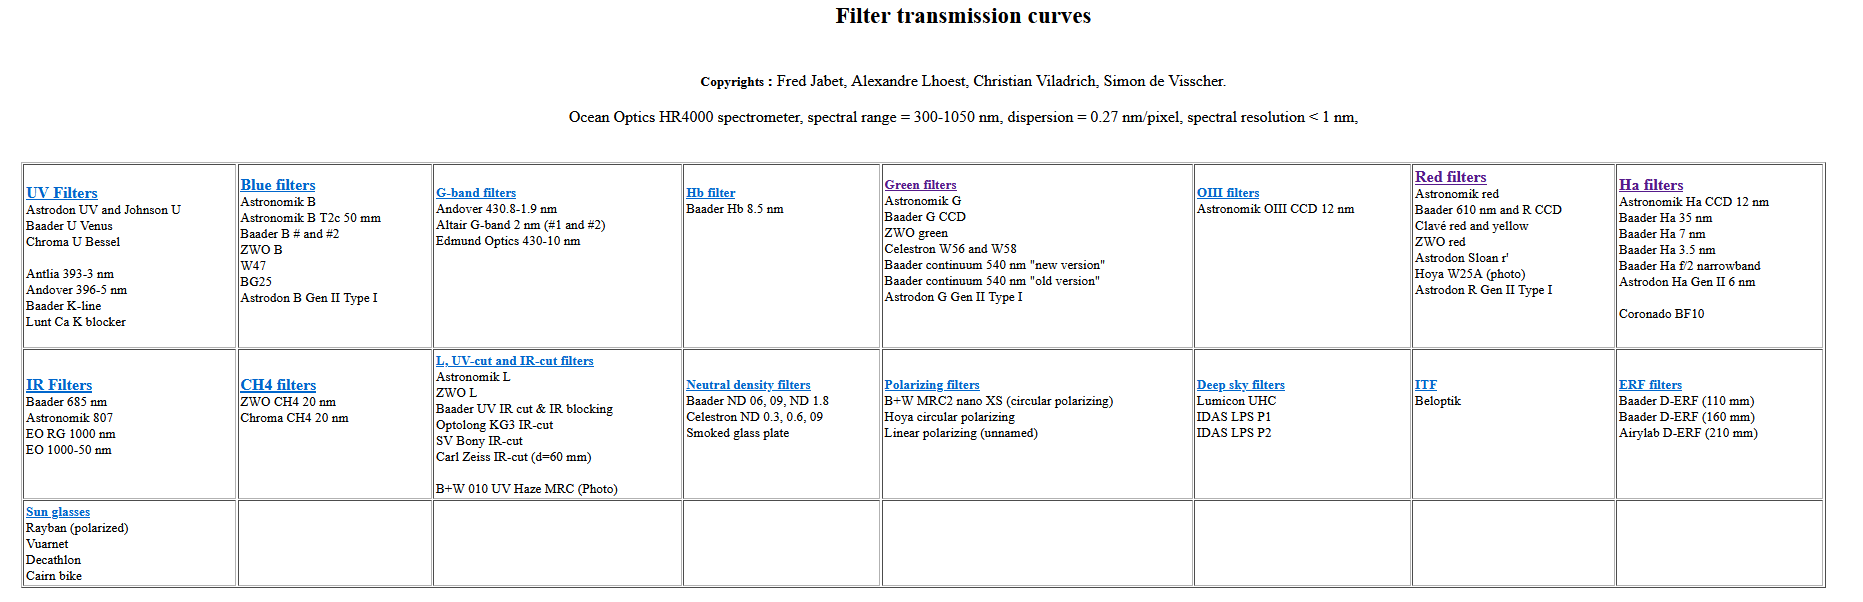 Transmisní křivky filtrů, přehled.png